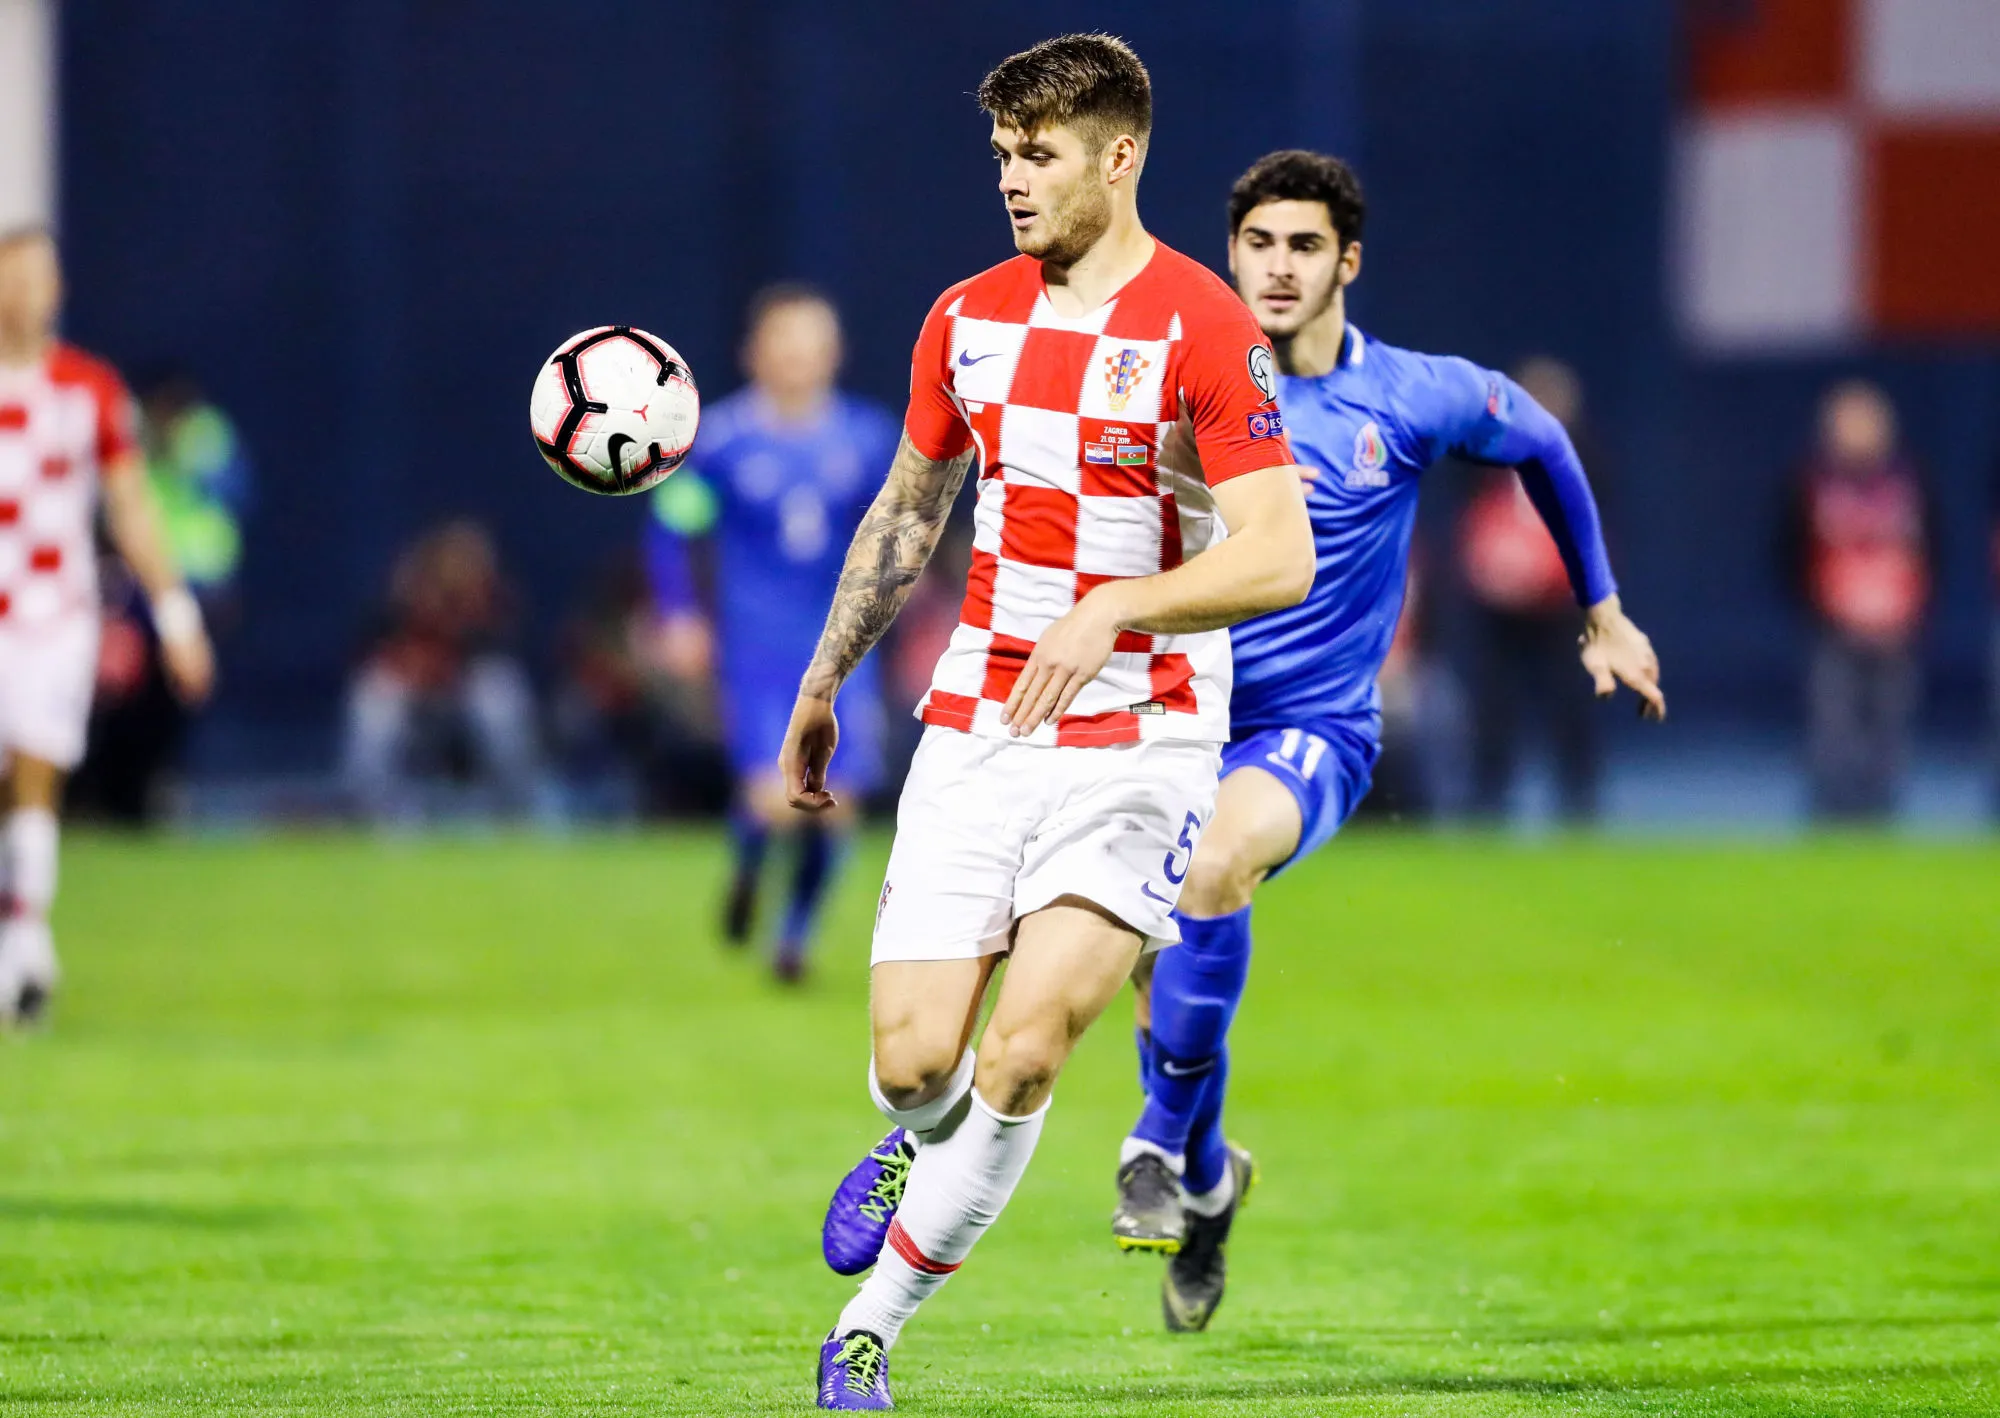 Pronostic Roumanie U21 Croatie U21 : Analyse, prono et cotes du match du Championnat d'Europe Espoirs 2019